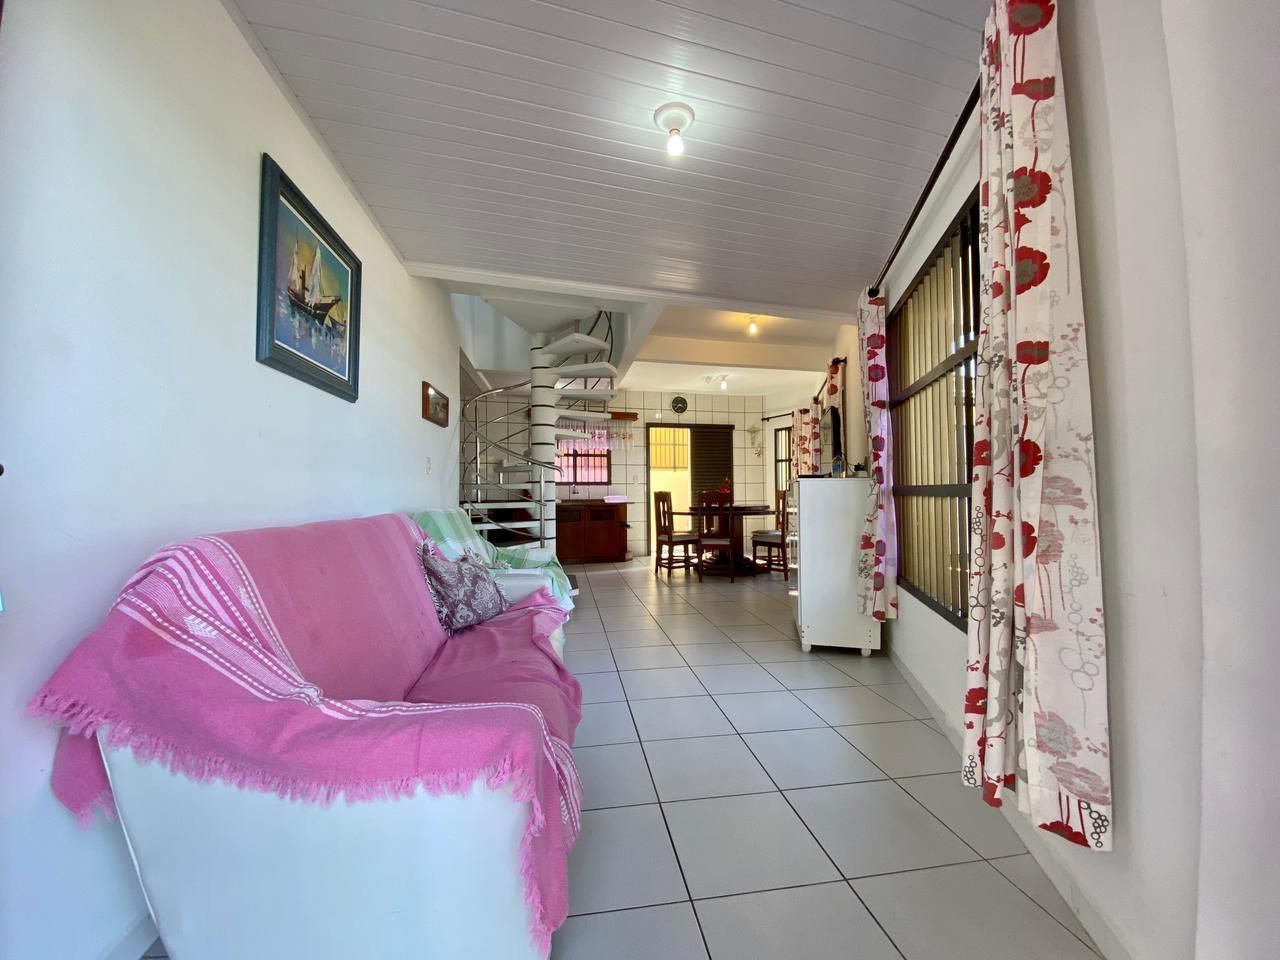 Apartamento com 3 Dormitórios para alugar, 100 m² por R$ 850,00